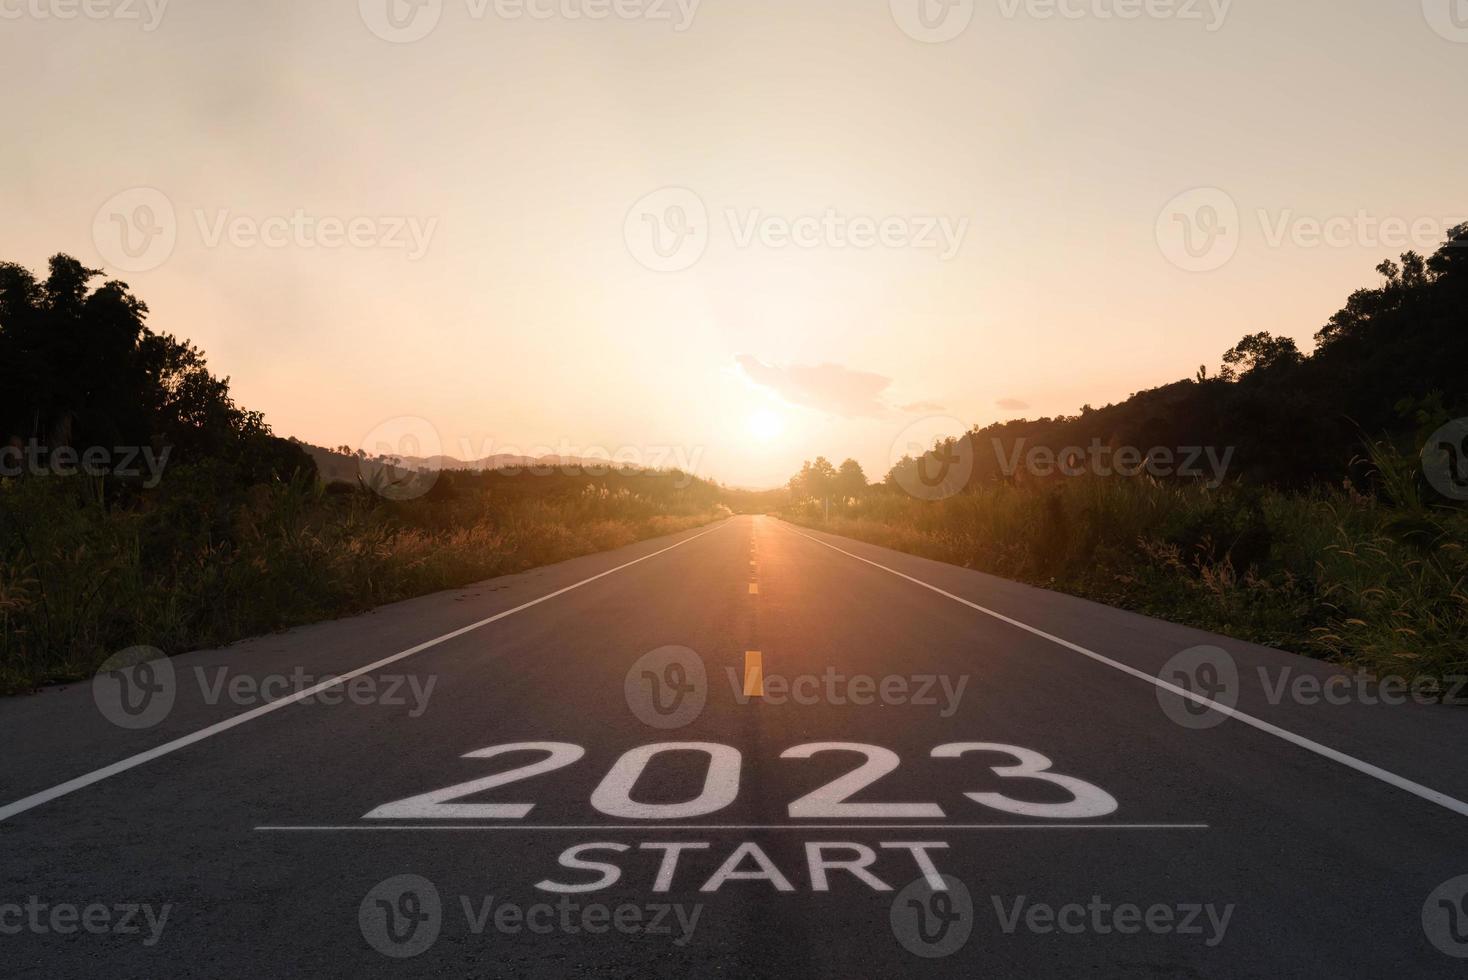 frohes neues jahr 2023,2023 symbolisiert den beginn des neuen jahres. der brief beginnt das neue jahr 2023 auf der straße in der naturroute fahrbahn sonnenuntergang hat baumumweltökologie oder grüntapetenkonzept foto